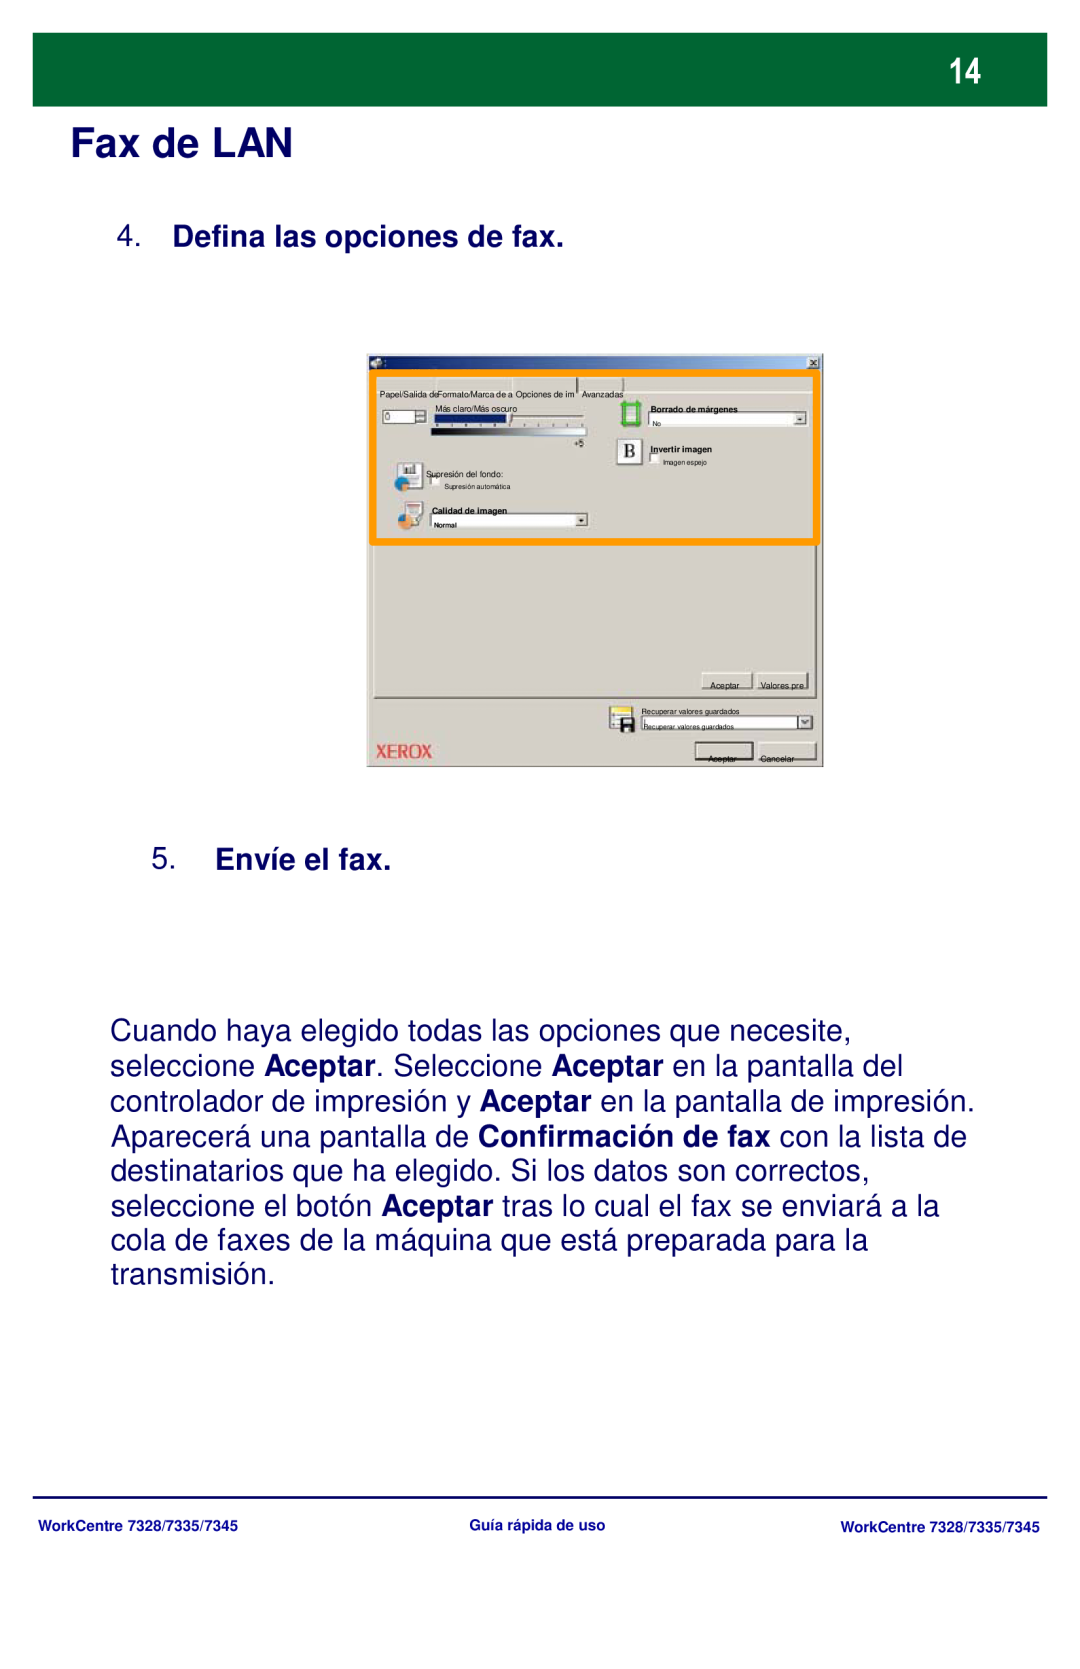 Xerox 7328 Fax de LAN, Defina las opciones de fax, 5.Envíe el fax, Borrado de márgenes, Invertir imagen, Calidad de imagen 